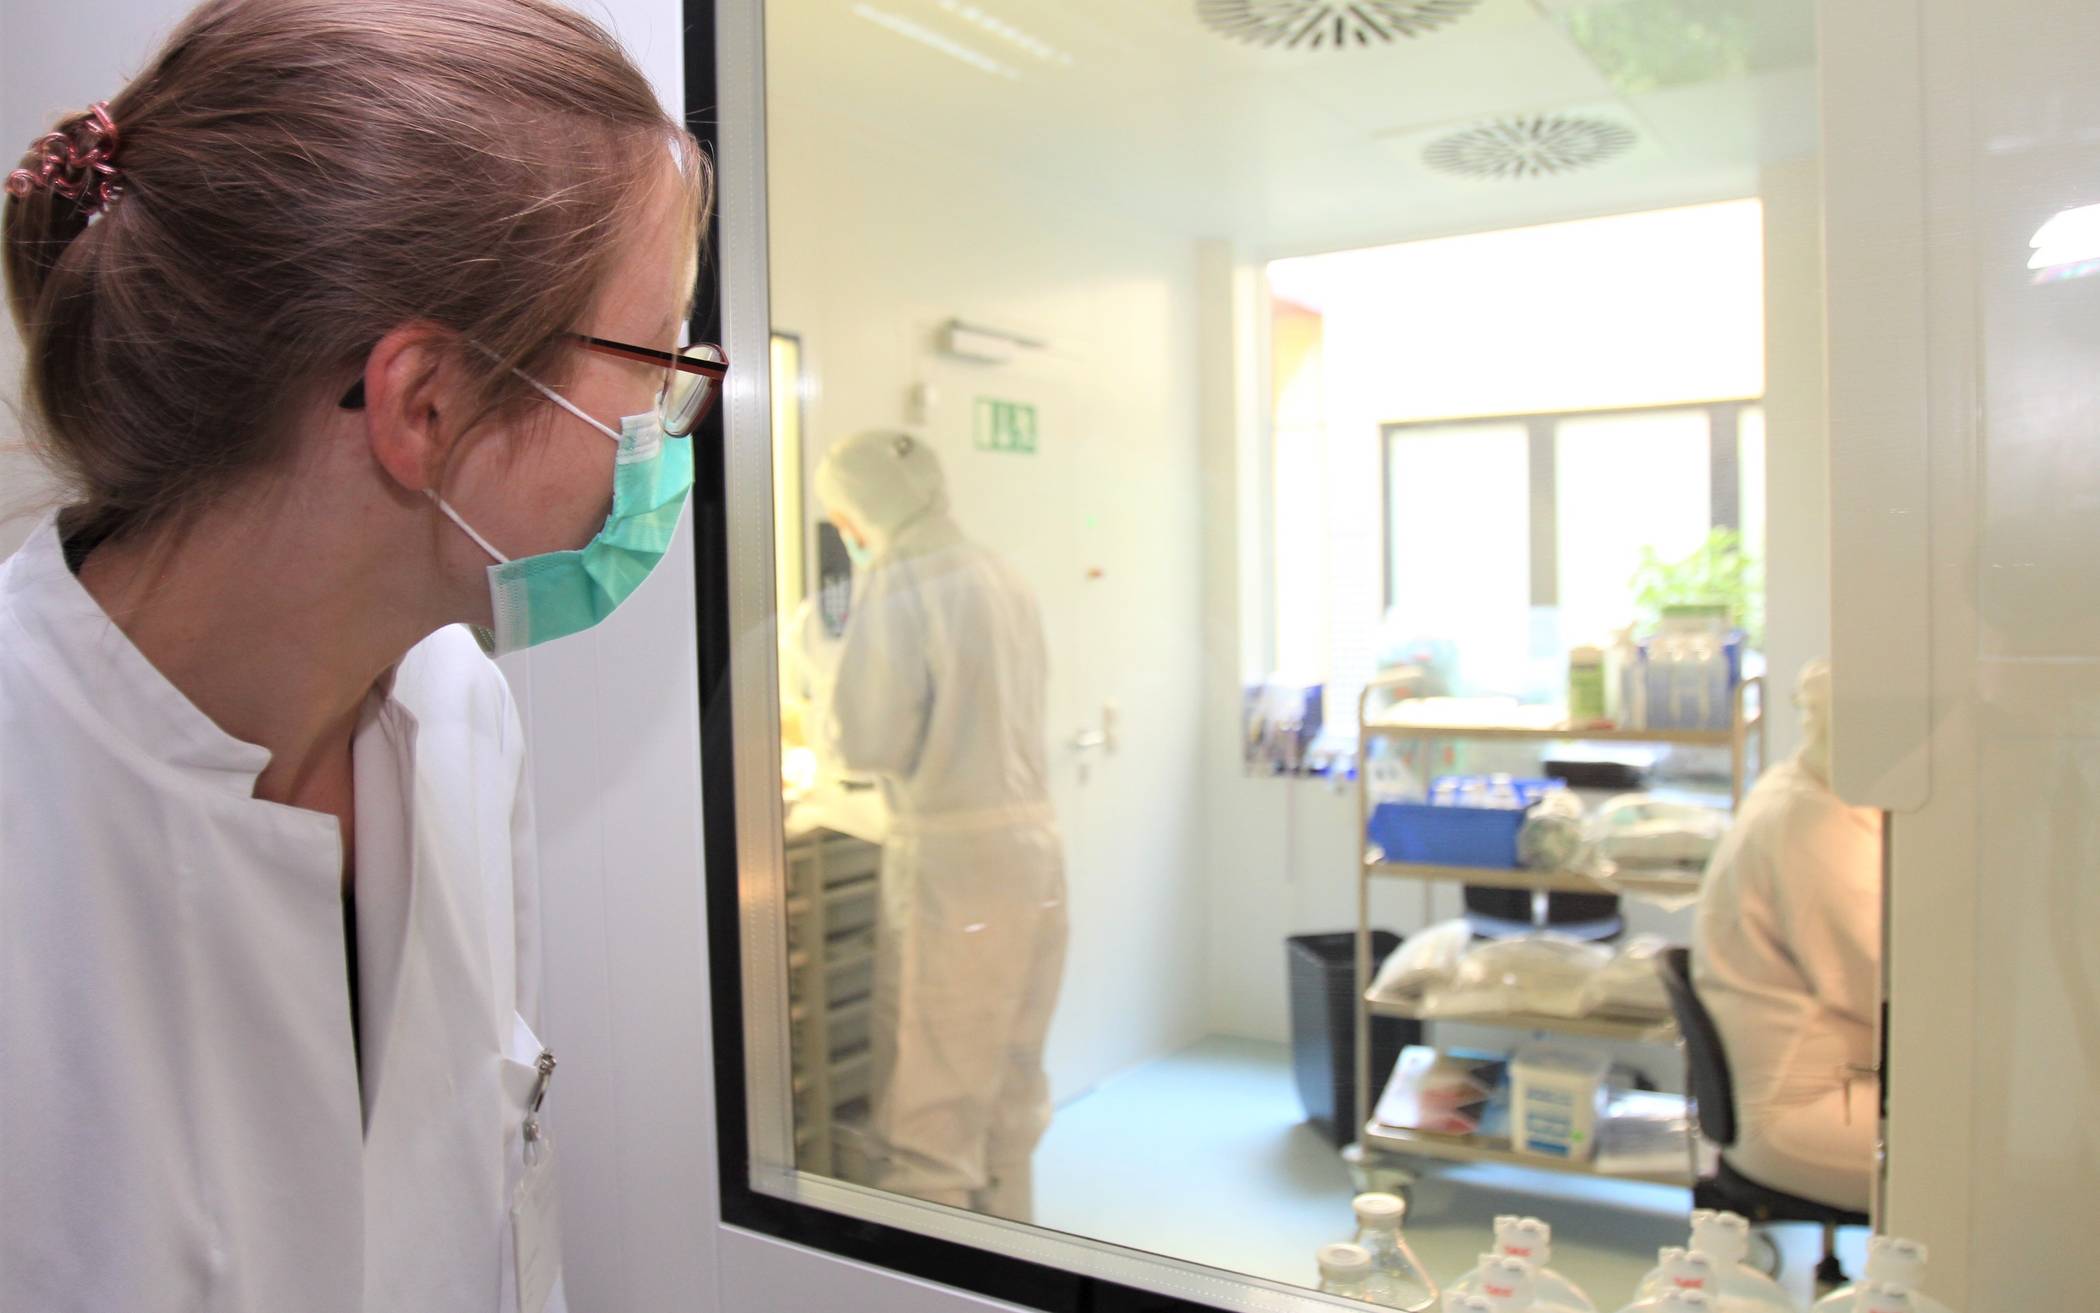  Juliane Naujoks, Apothekerin im Rheinland Klinikum Dormagen, verfolgt durch ein Fenster die Arbeit der beiden Kolleginnen vom Klinikum Leverkusen im Reinraum des Dormagener Krankenhauses an der Dr. Geldmacher-Straße. 